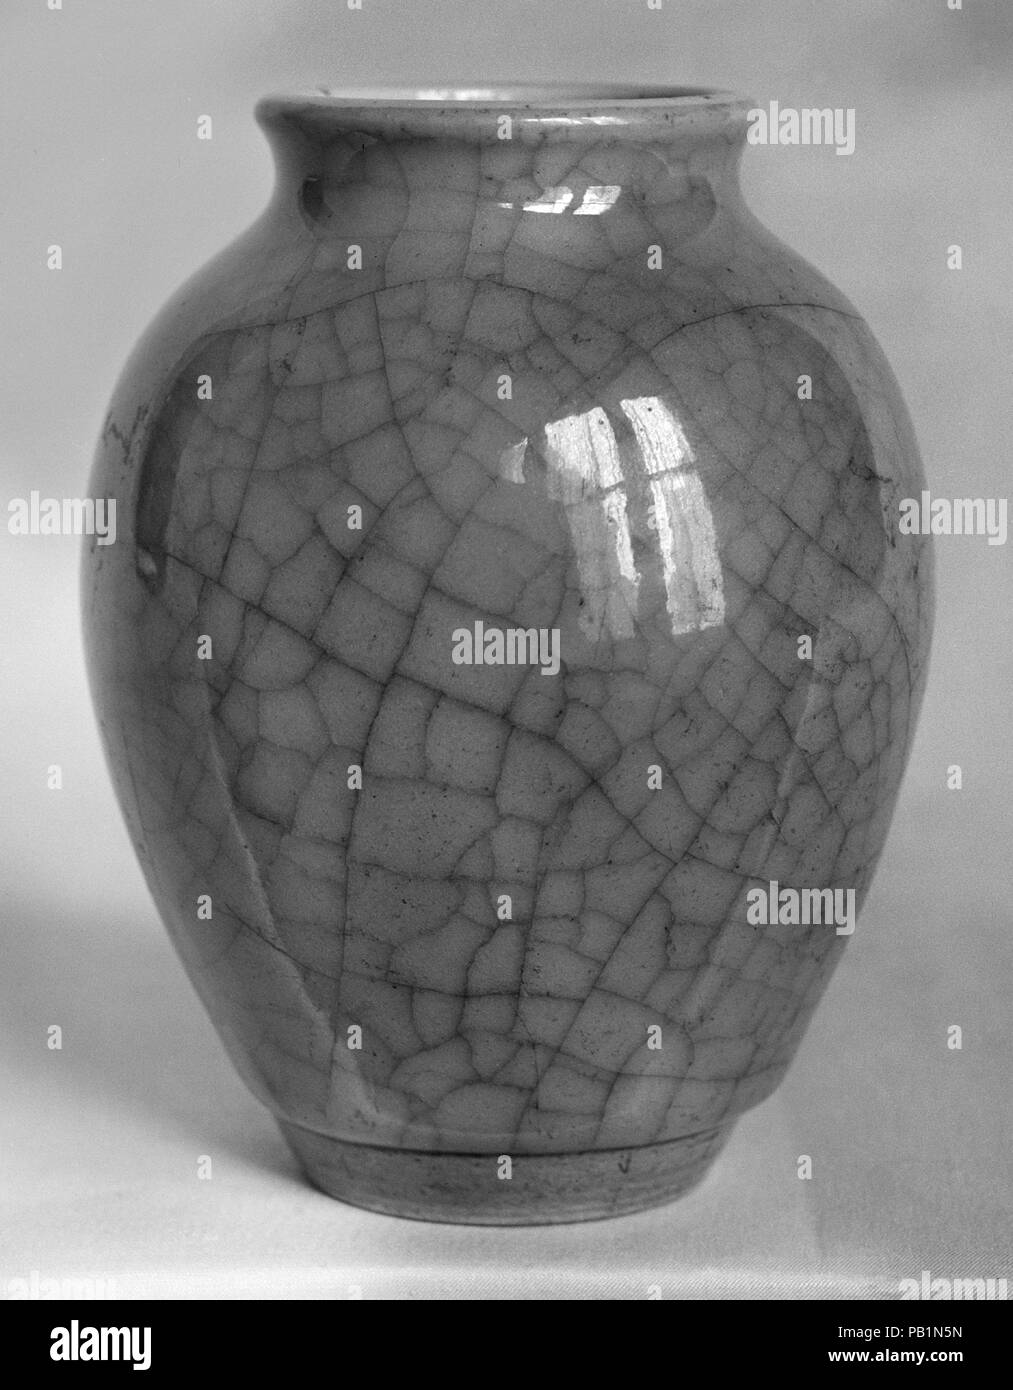 Jar. Culture: China. Dimensions: H. 4 1/2 in. (11.4 cm). Museum: Metropolitan Museum of Art, New York, USA. Stock Photo